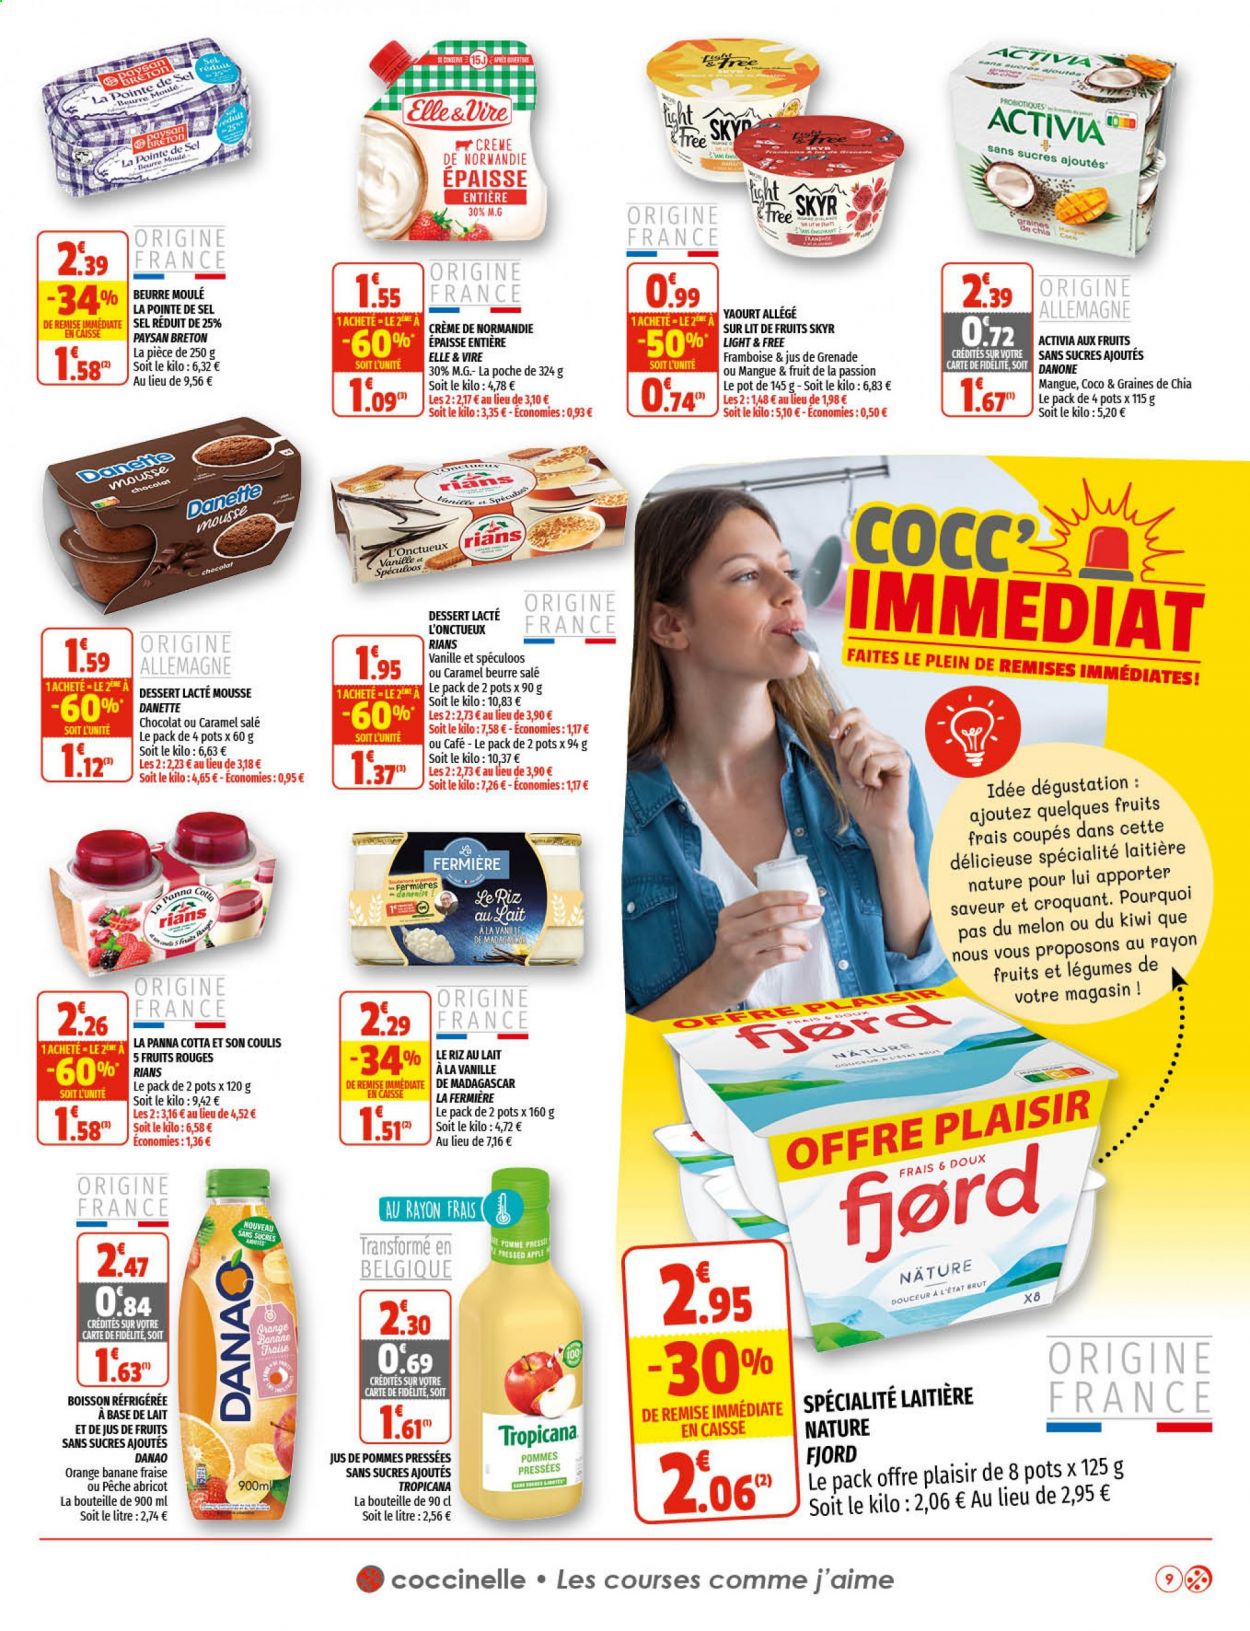 Catalogue Coccinelle Supermarché - 28.04.2021 - 09.05.2021. 